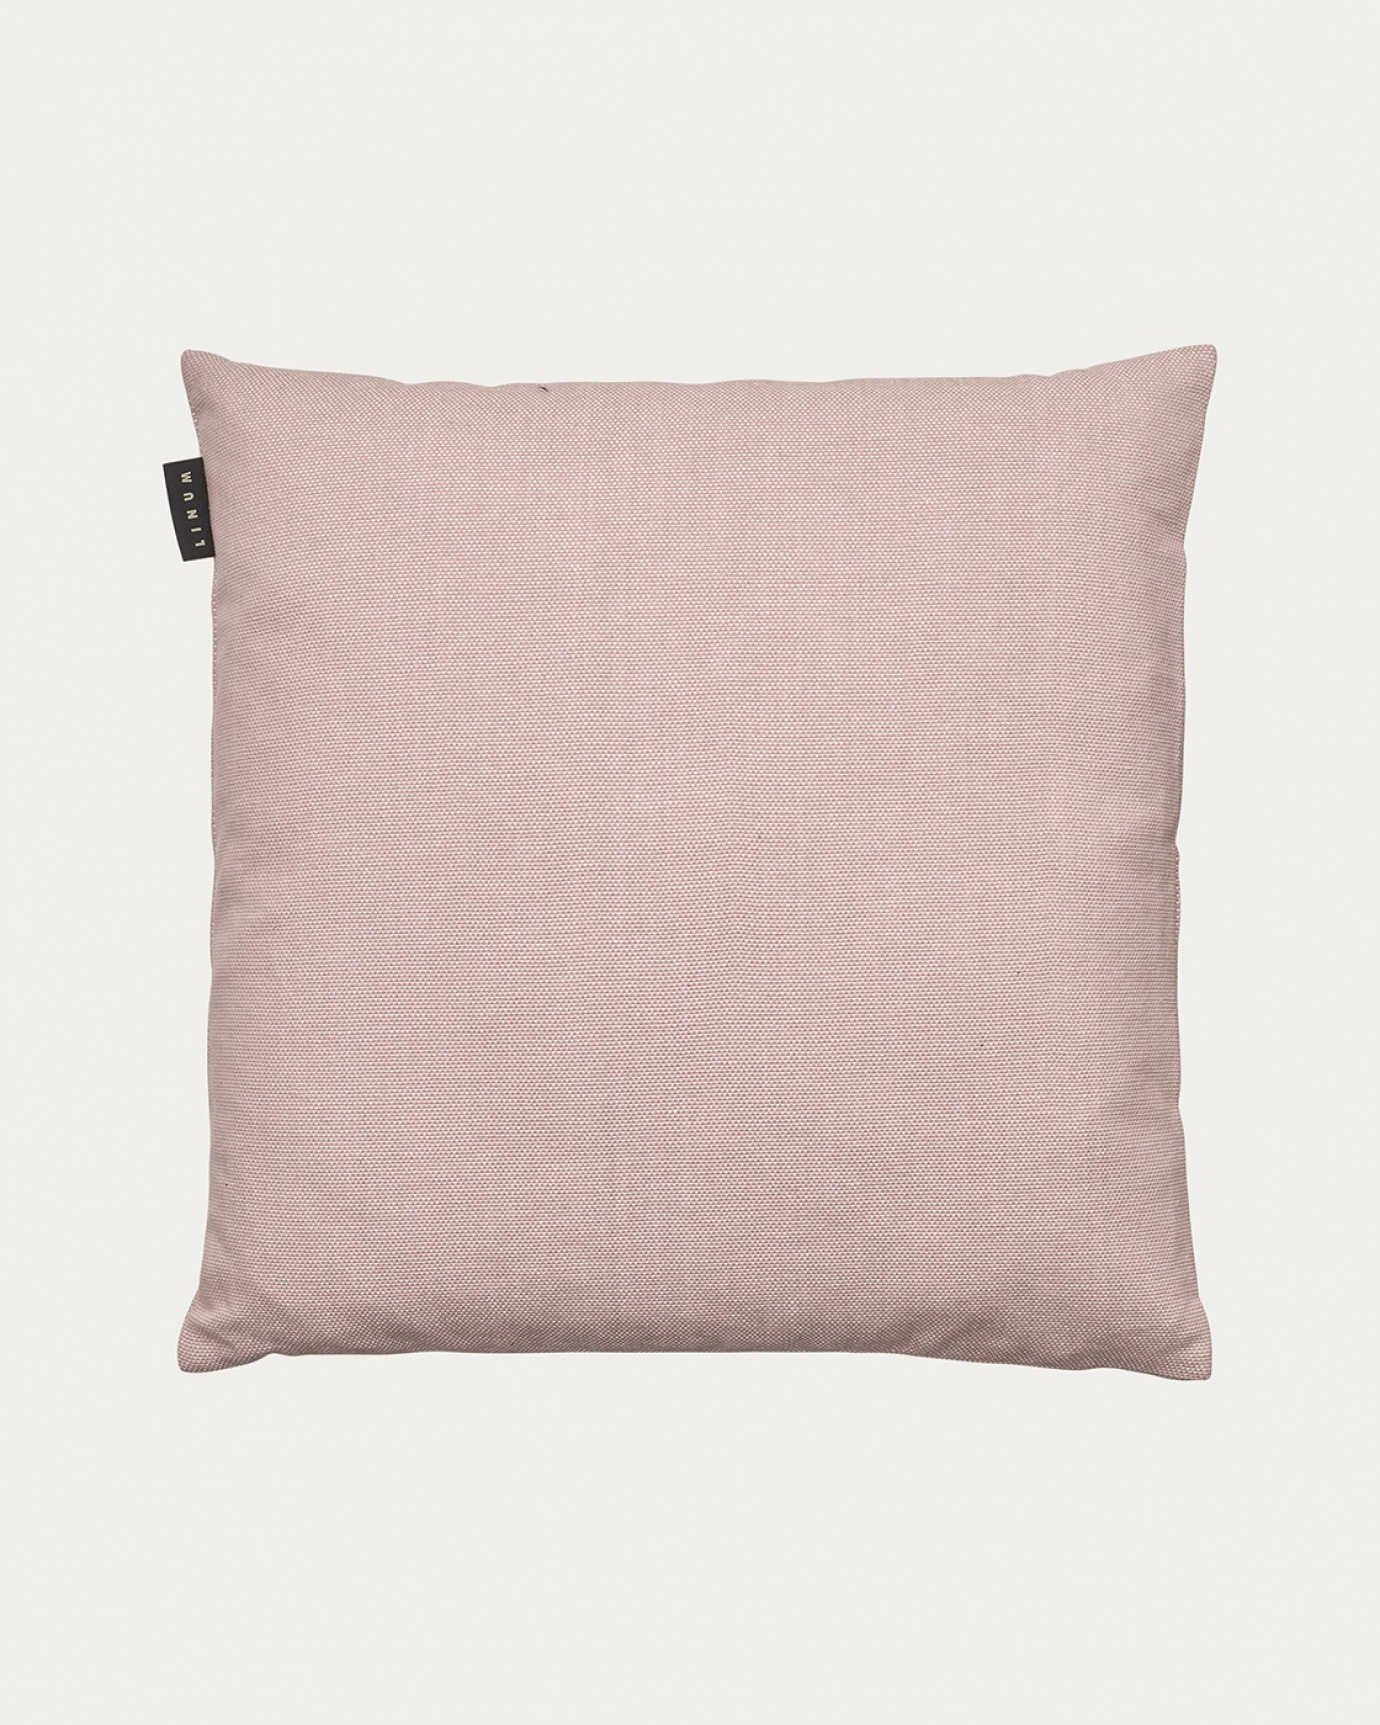 Immagine prodotto rosa antico PEPPER copricuscini in morbido cotone di LINUM DESIGN. Facile da lavare e resistente per generazioni. Dimensioni 50x50 cm.